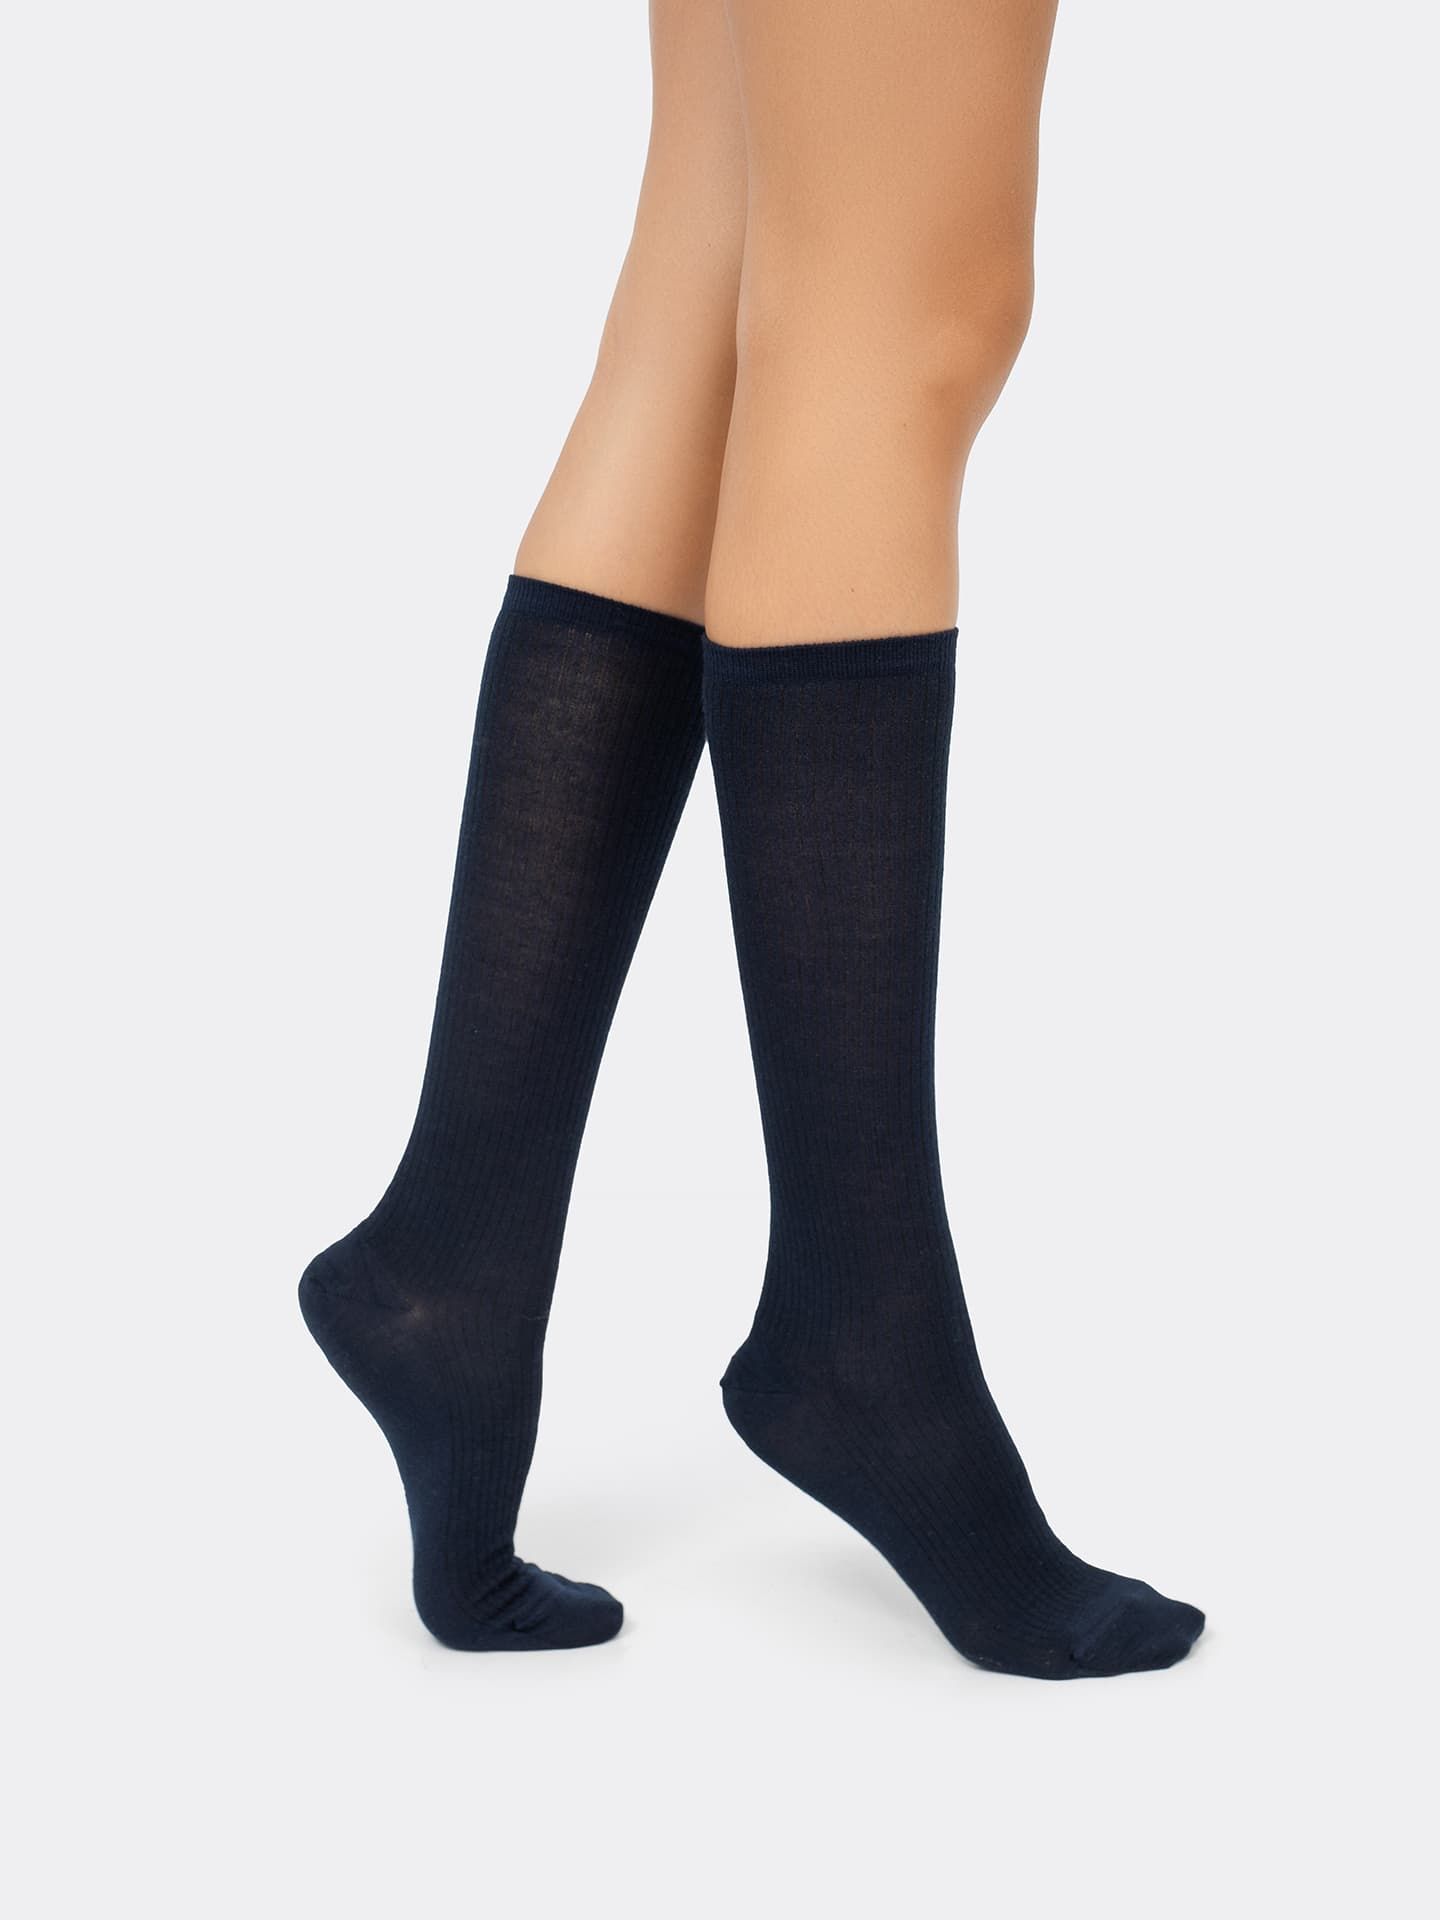 Завышенные женские носки из итальянской шерсти темно-синего цвета